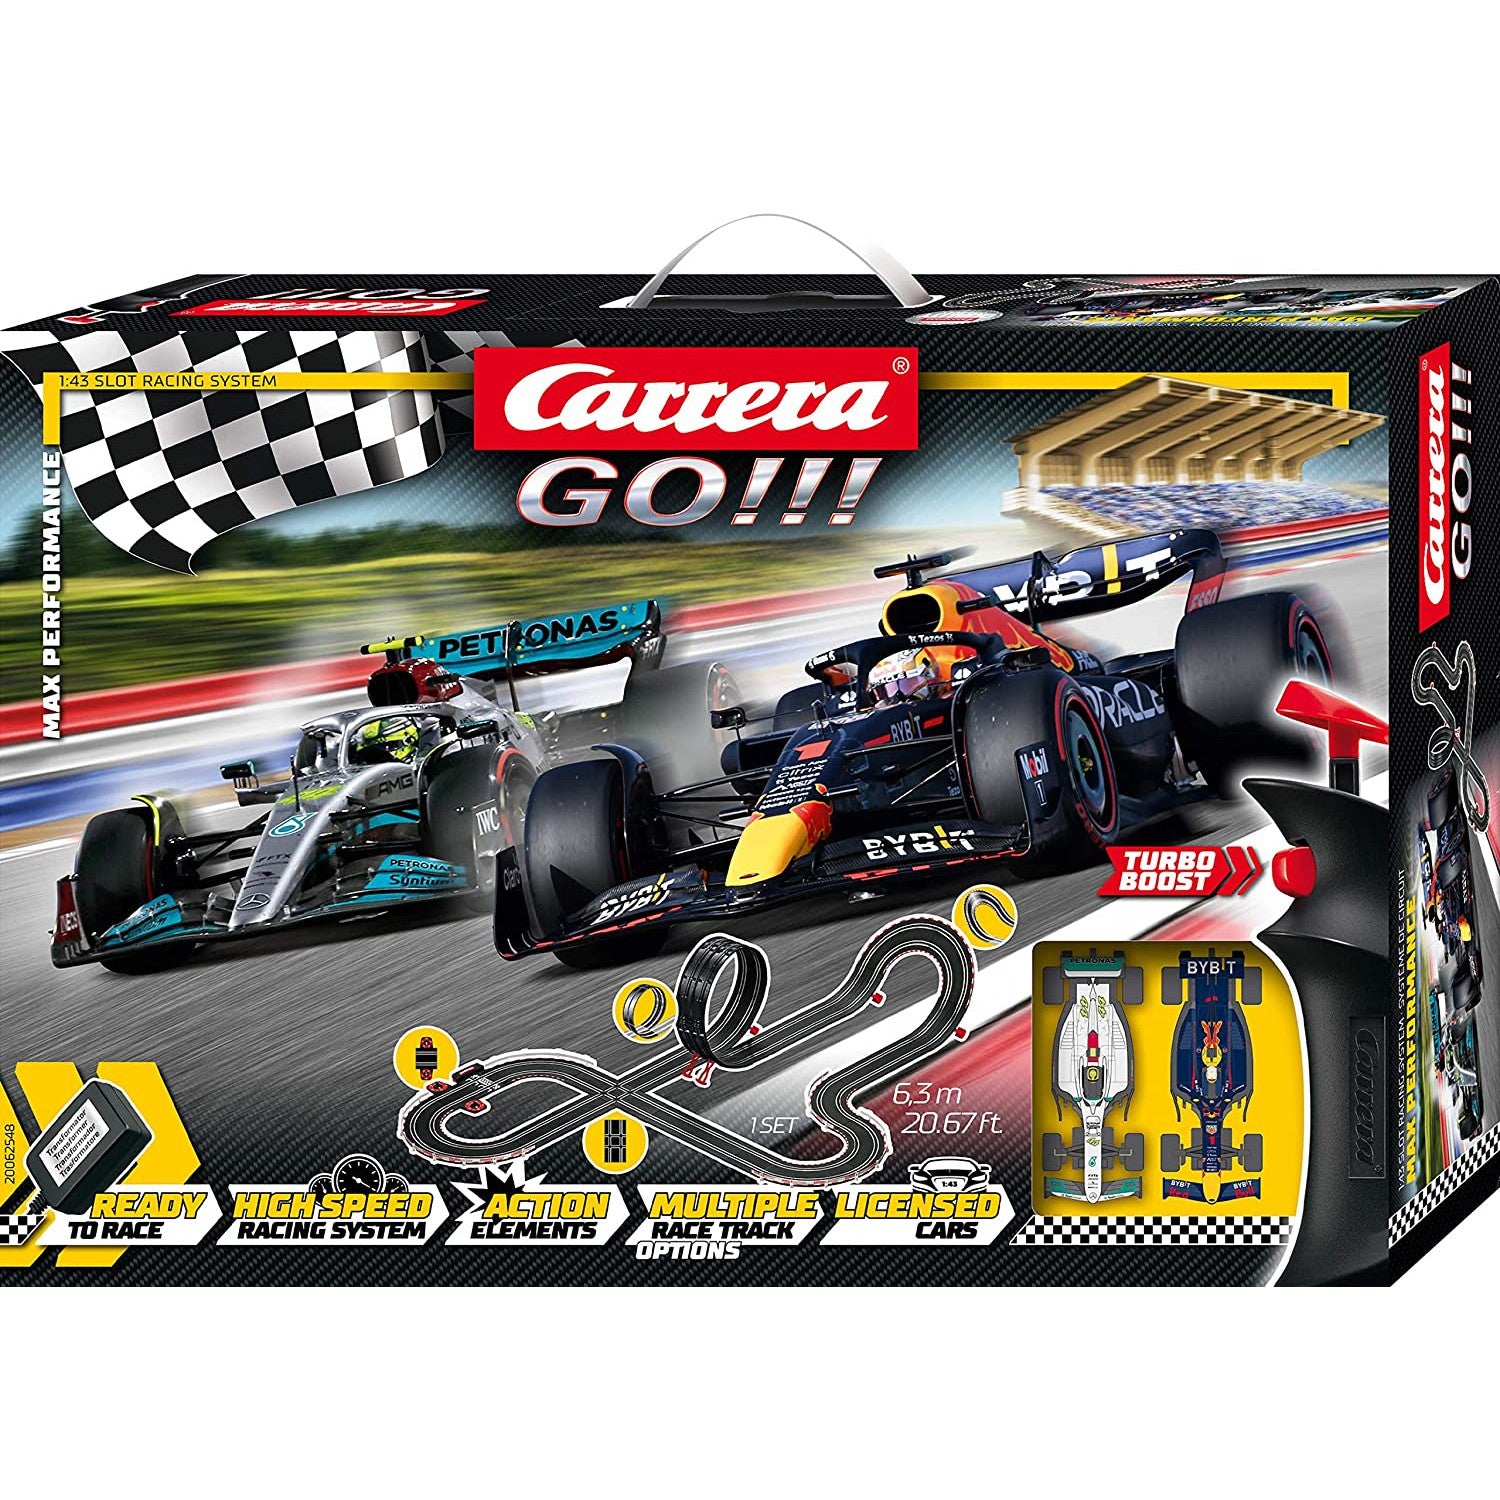 Carrera GO!!! Max Performance 2022 F1 Slot Racing Set (6.3m)